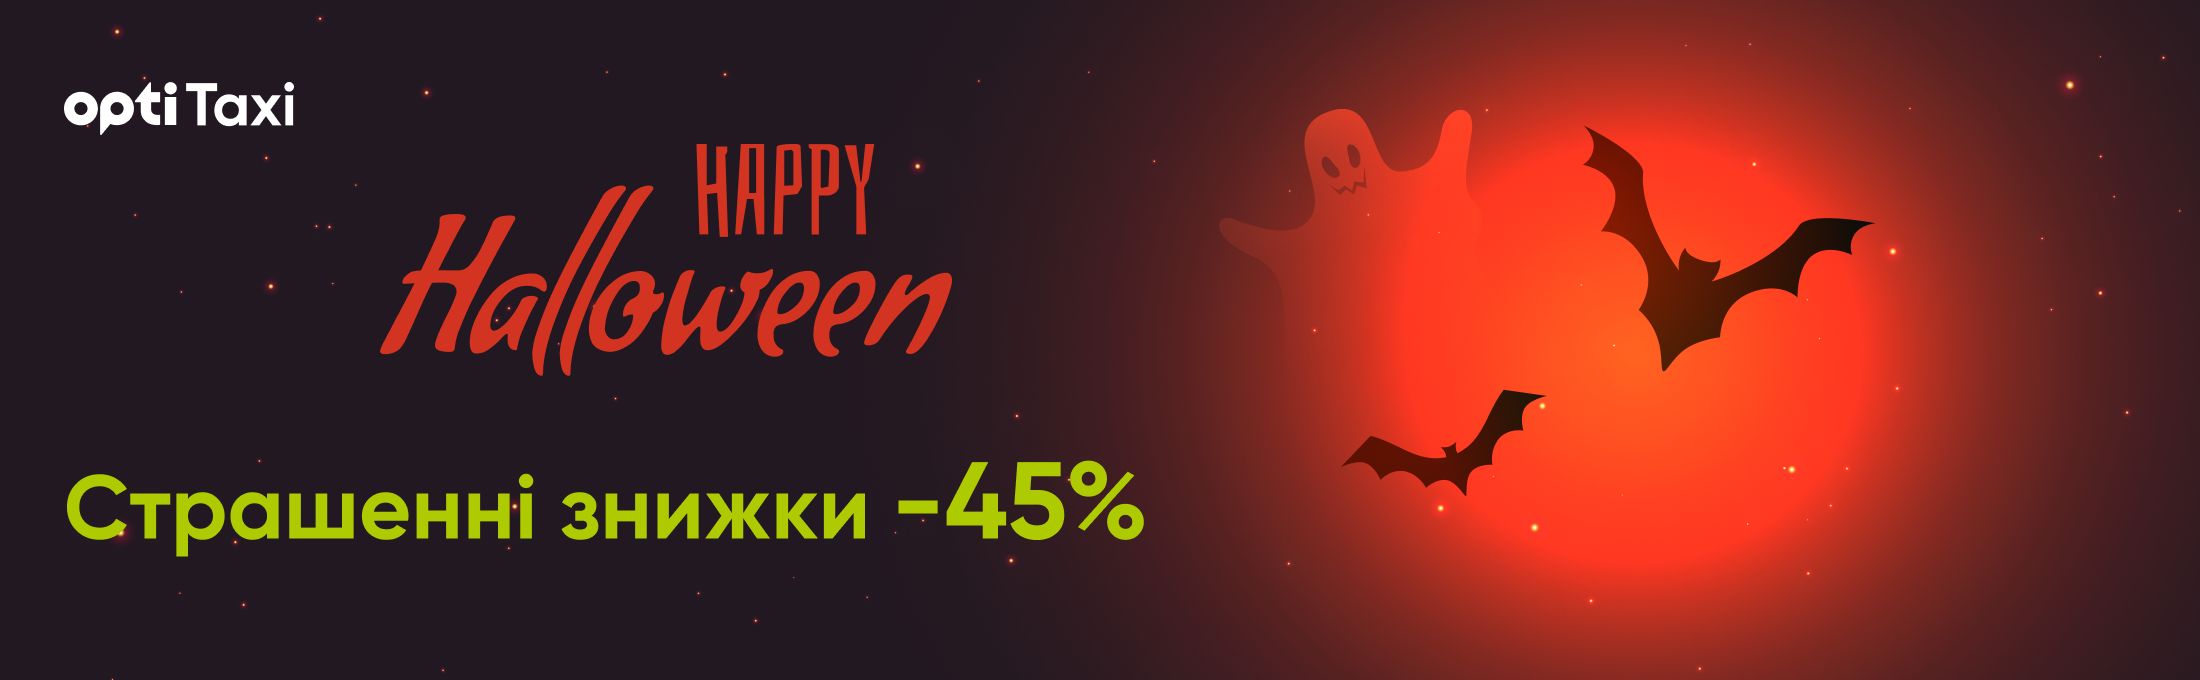 Świętuj Halloween z Opti Taxi: skorzystaj ze strasznej zniżki - 45% Mariupol